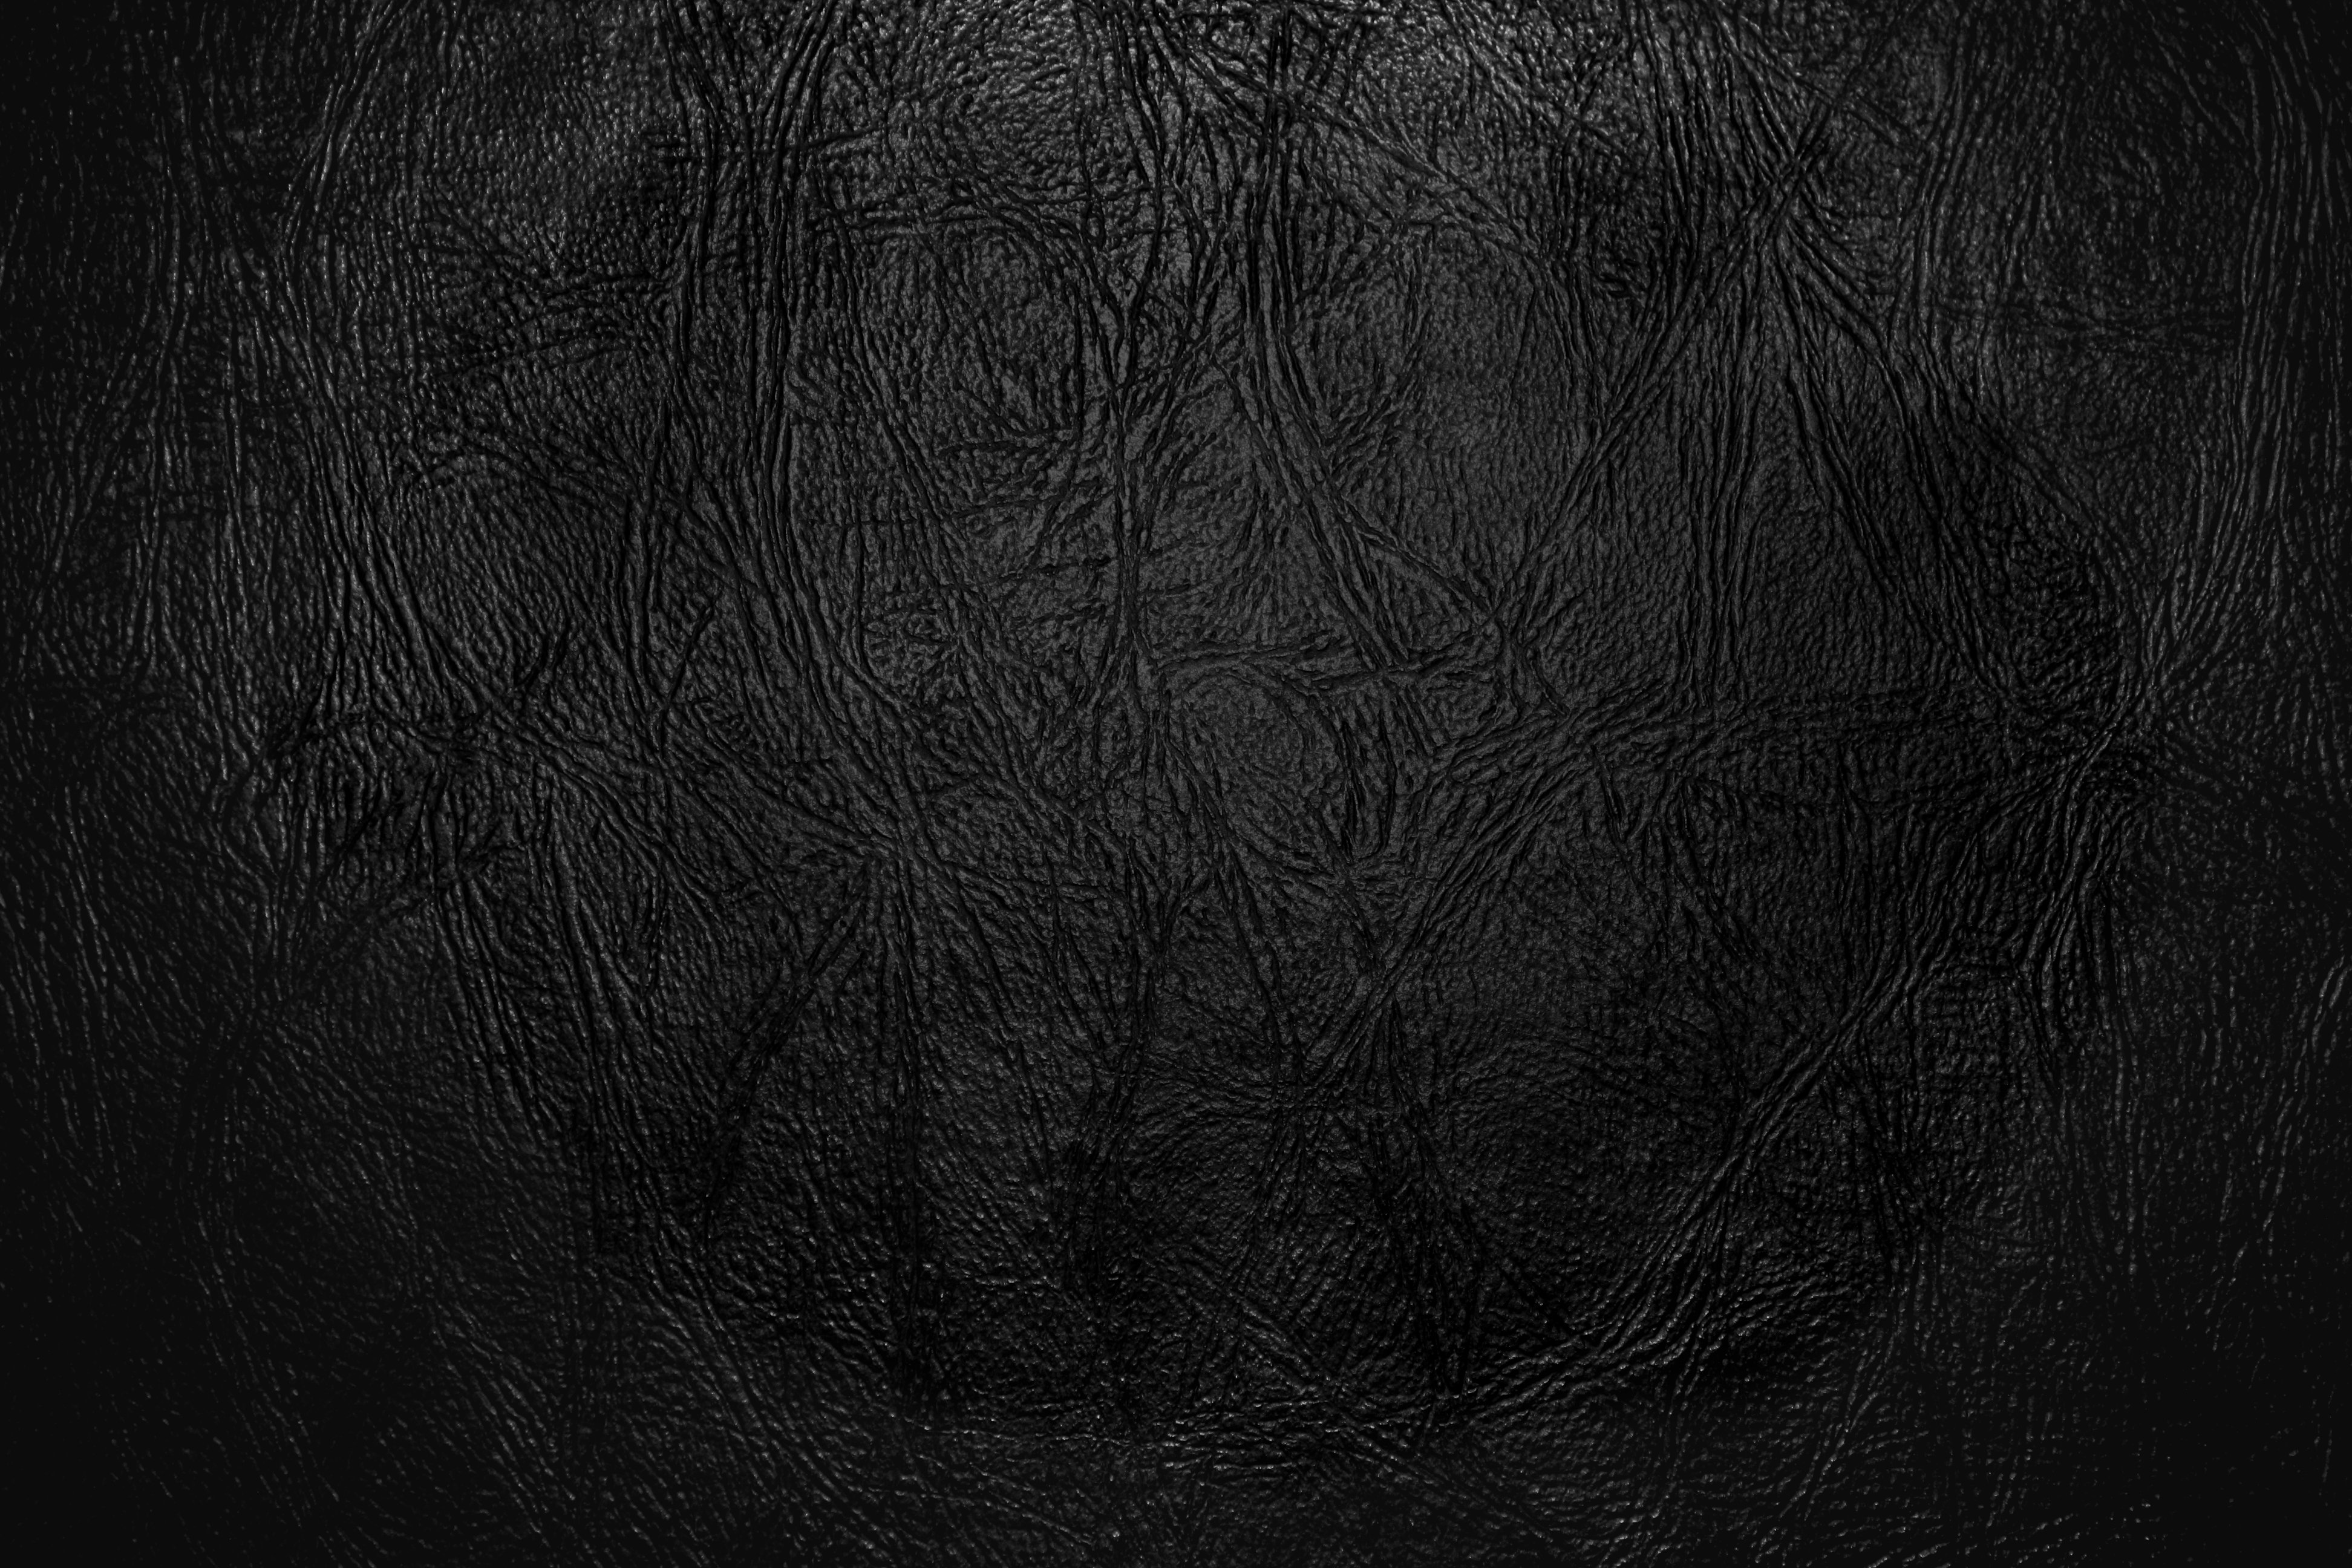 18 Leather Background Photoshop Images